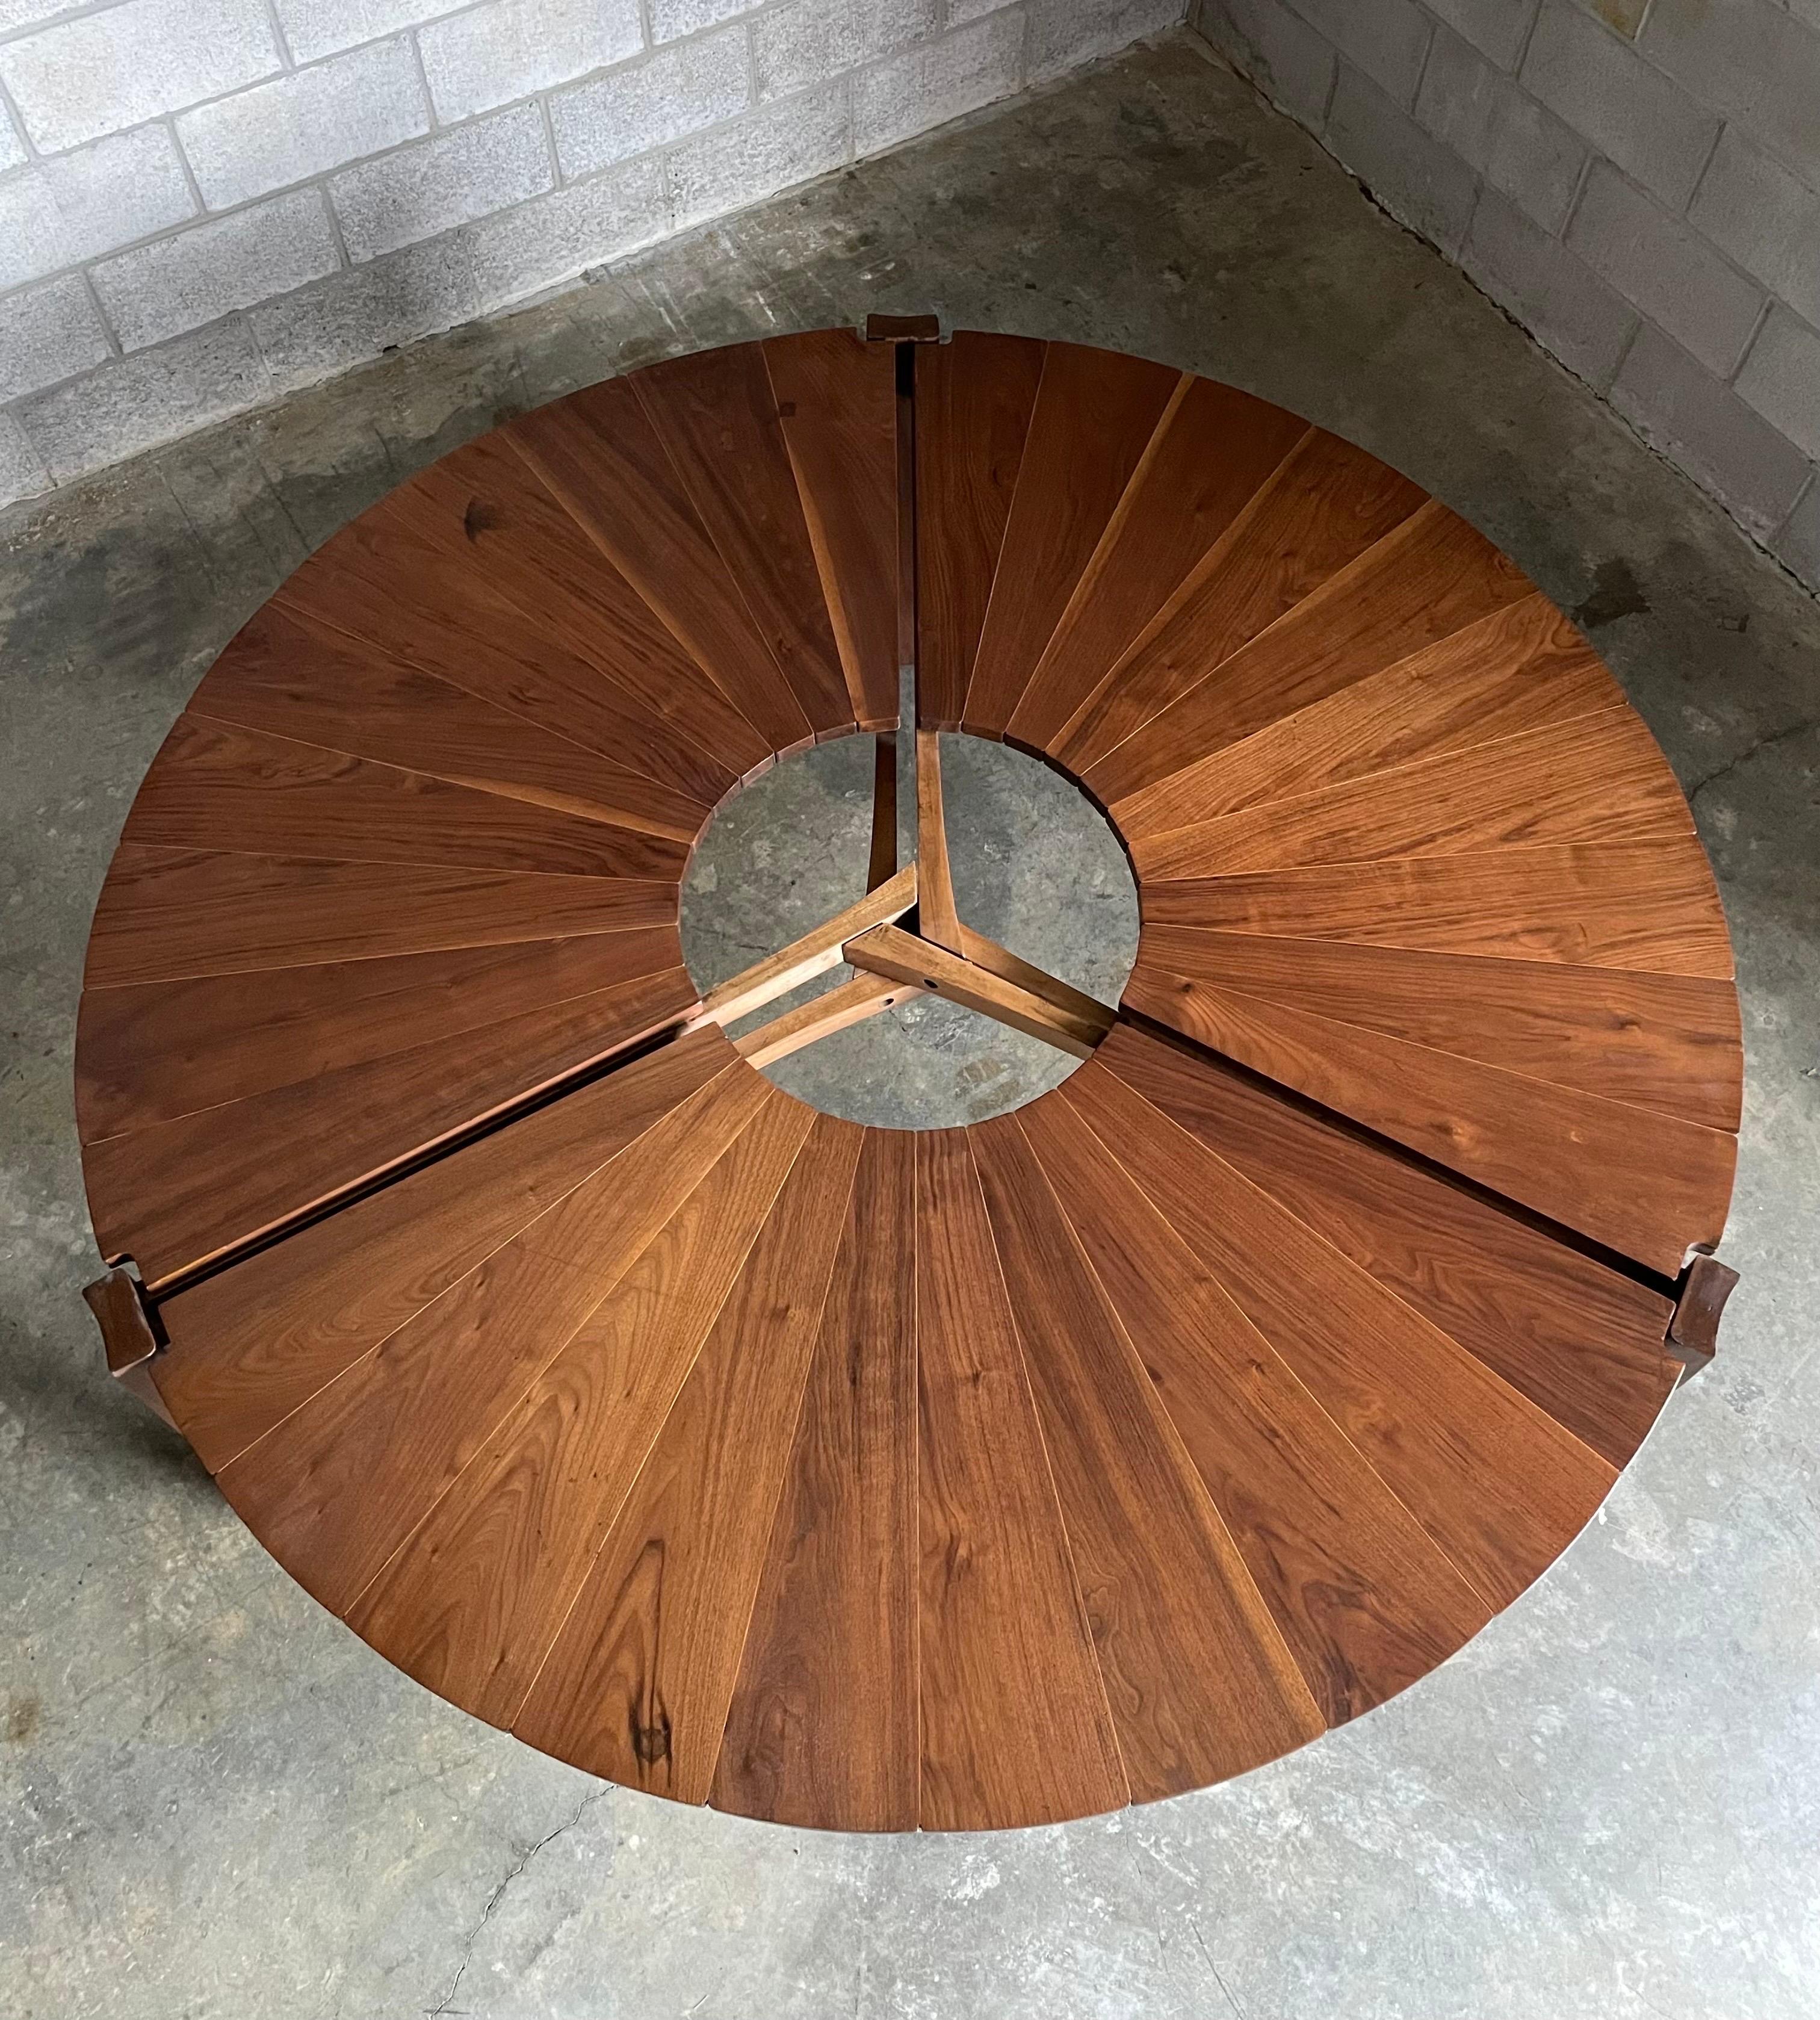 Ein unglaublicher, einzigartiger Esstisch, entworfen und hergestellt von Charles Faucher im Jahr 1975. Der Tisch besteht aus drei Pfosten mit einem Abschnitt aus Nussbaumblättern zwischen jedem Bein. Die Blütenblätter aus Walnussholz sind durch